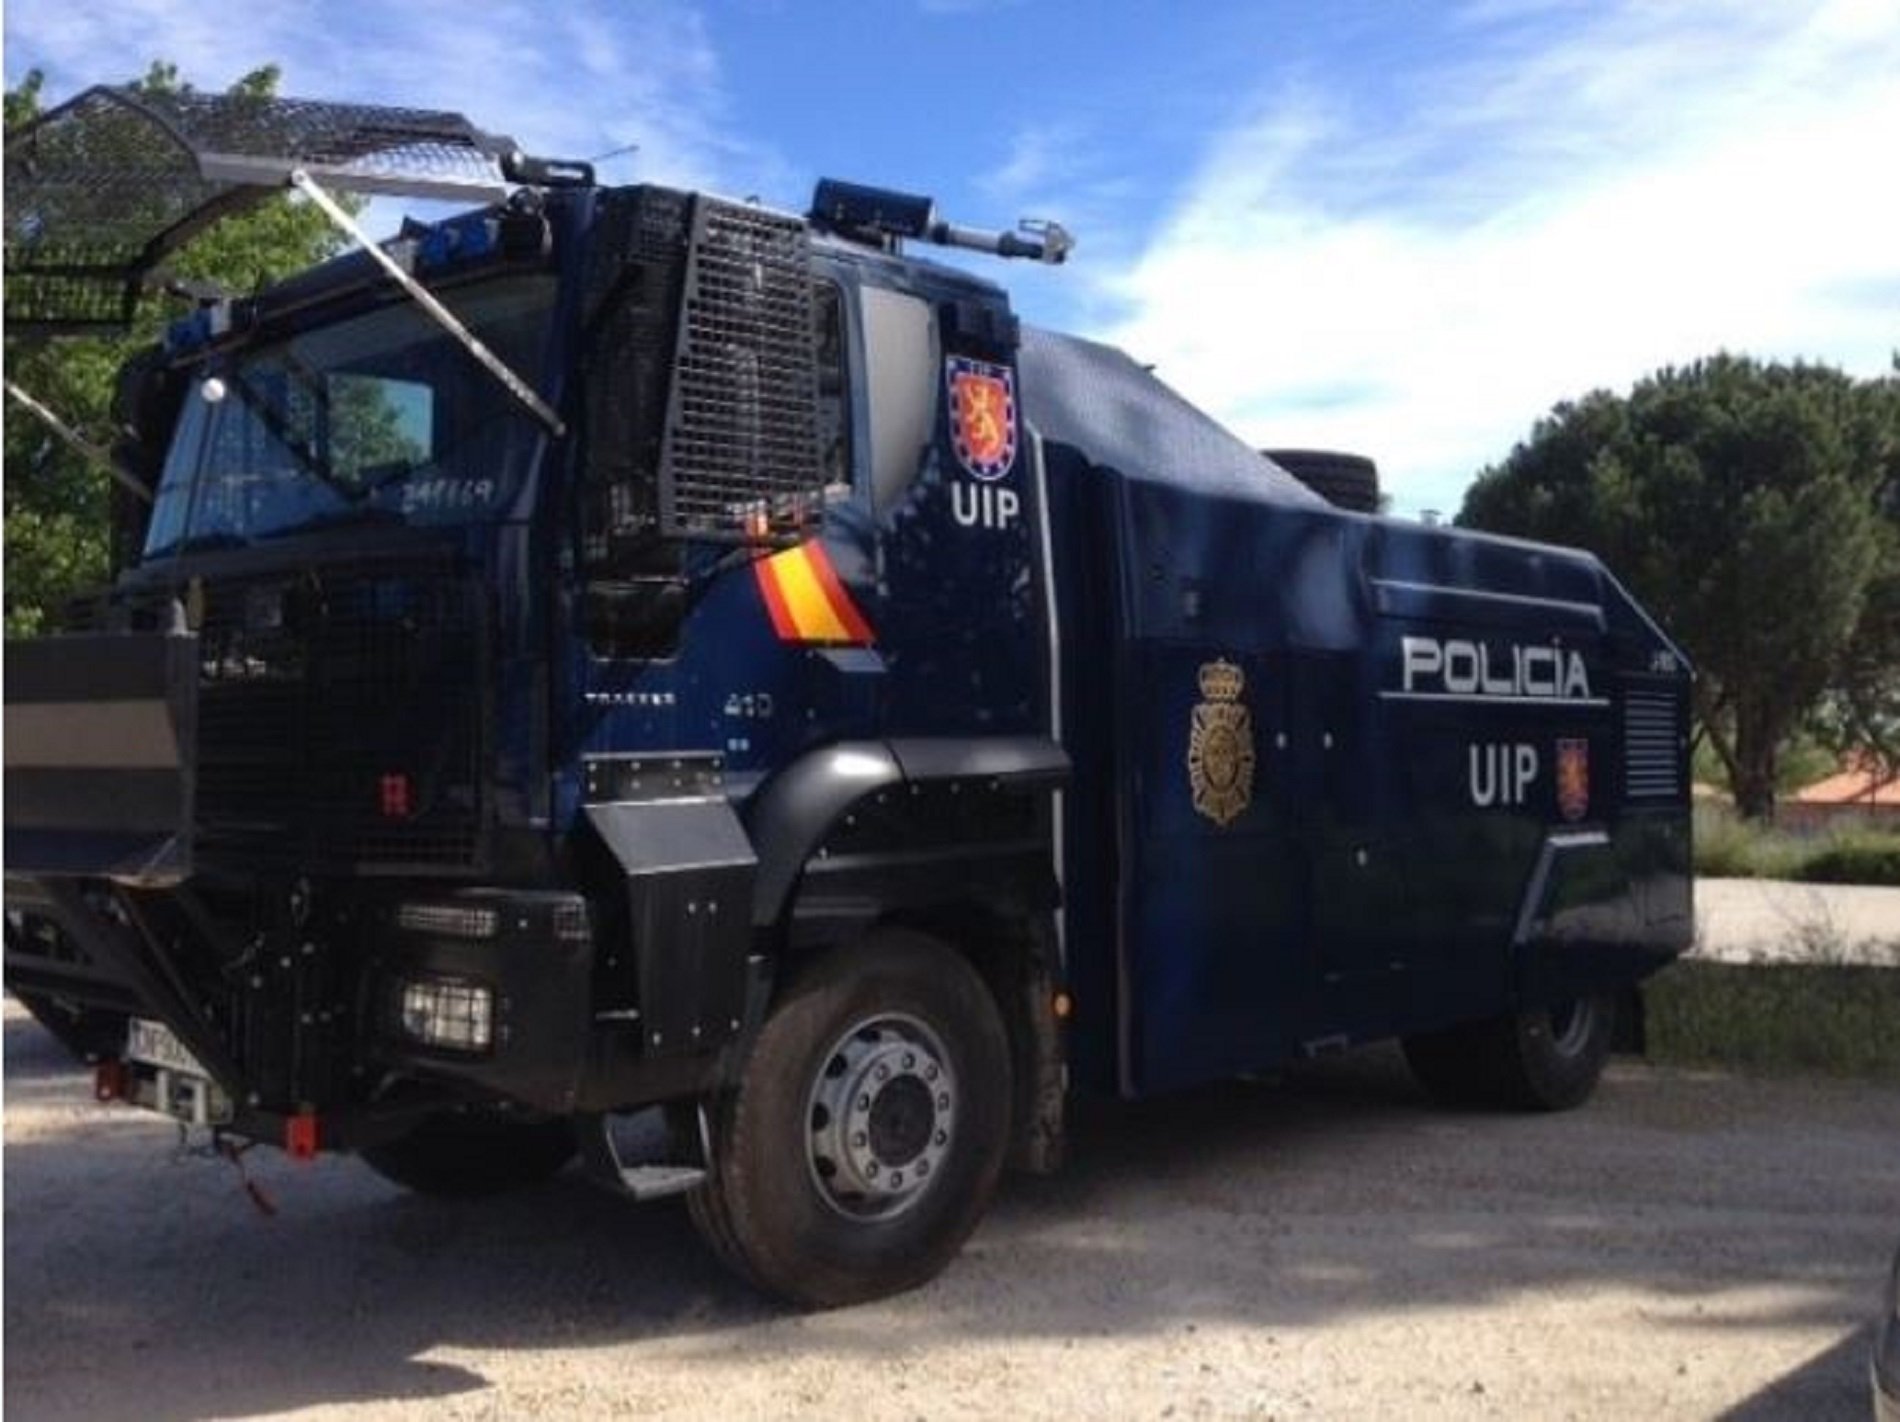 La policía española desplaza a Barcelona una tanqueta de agua para protestas